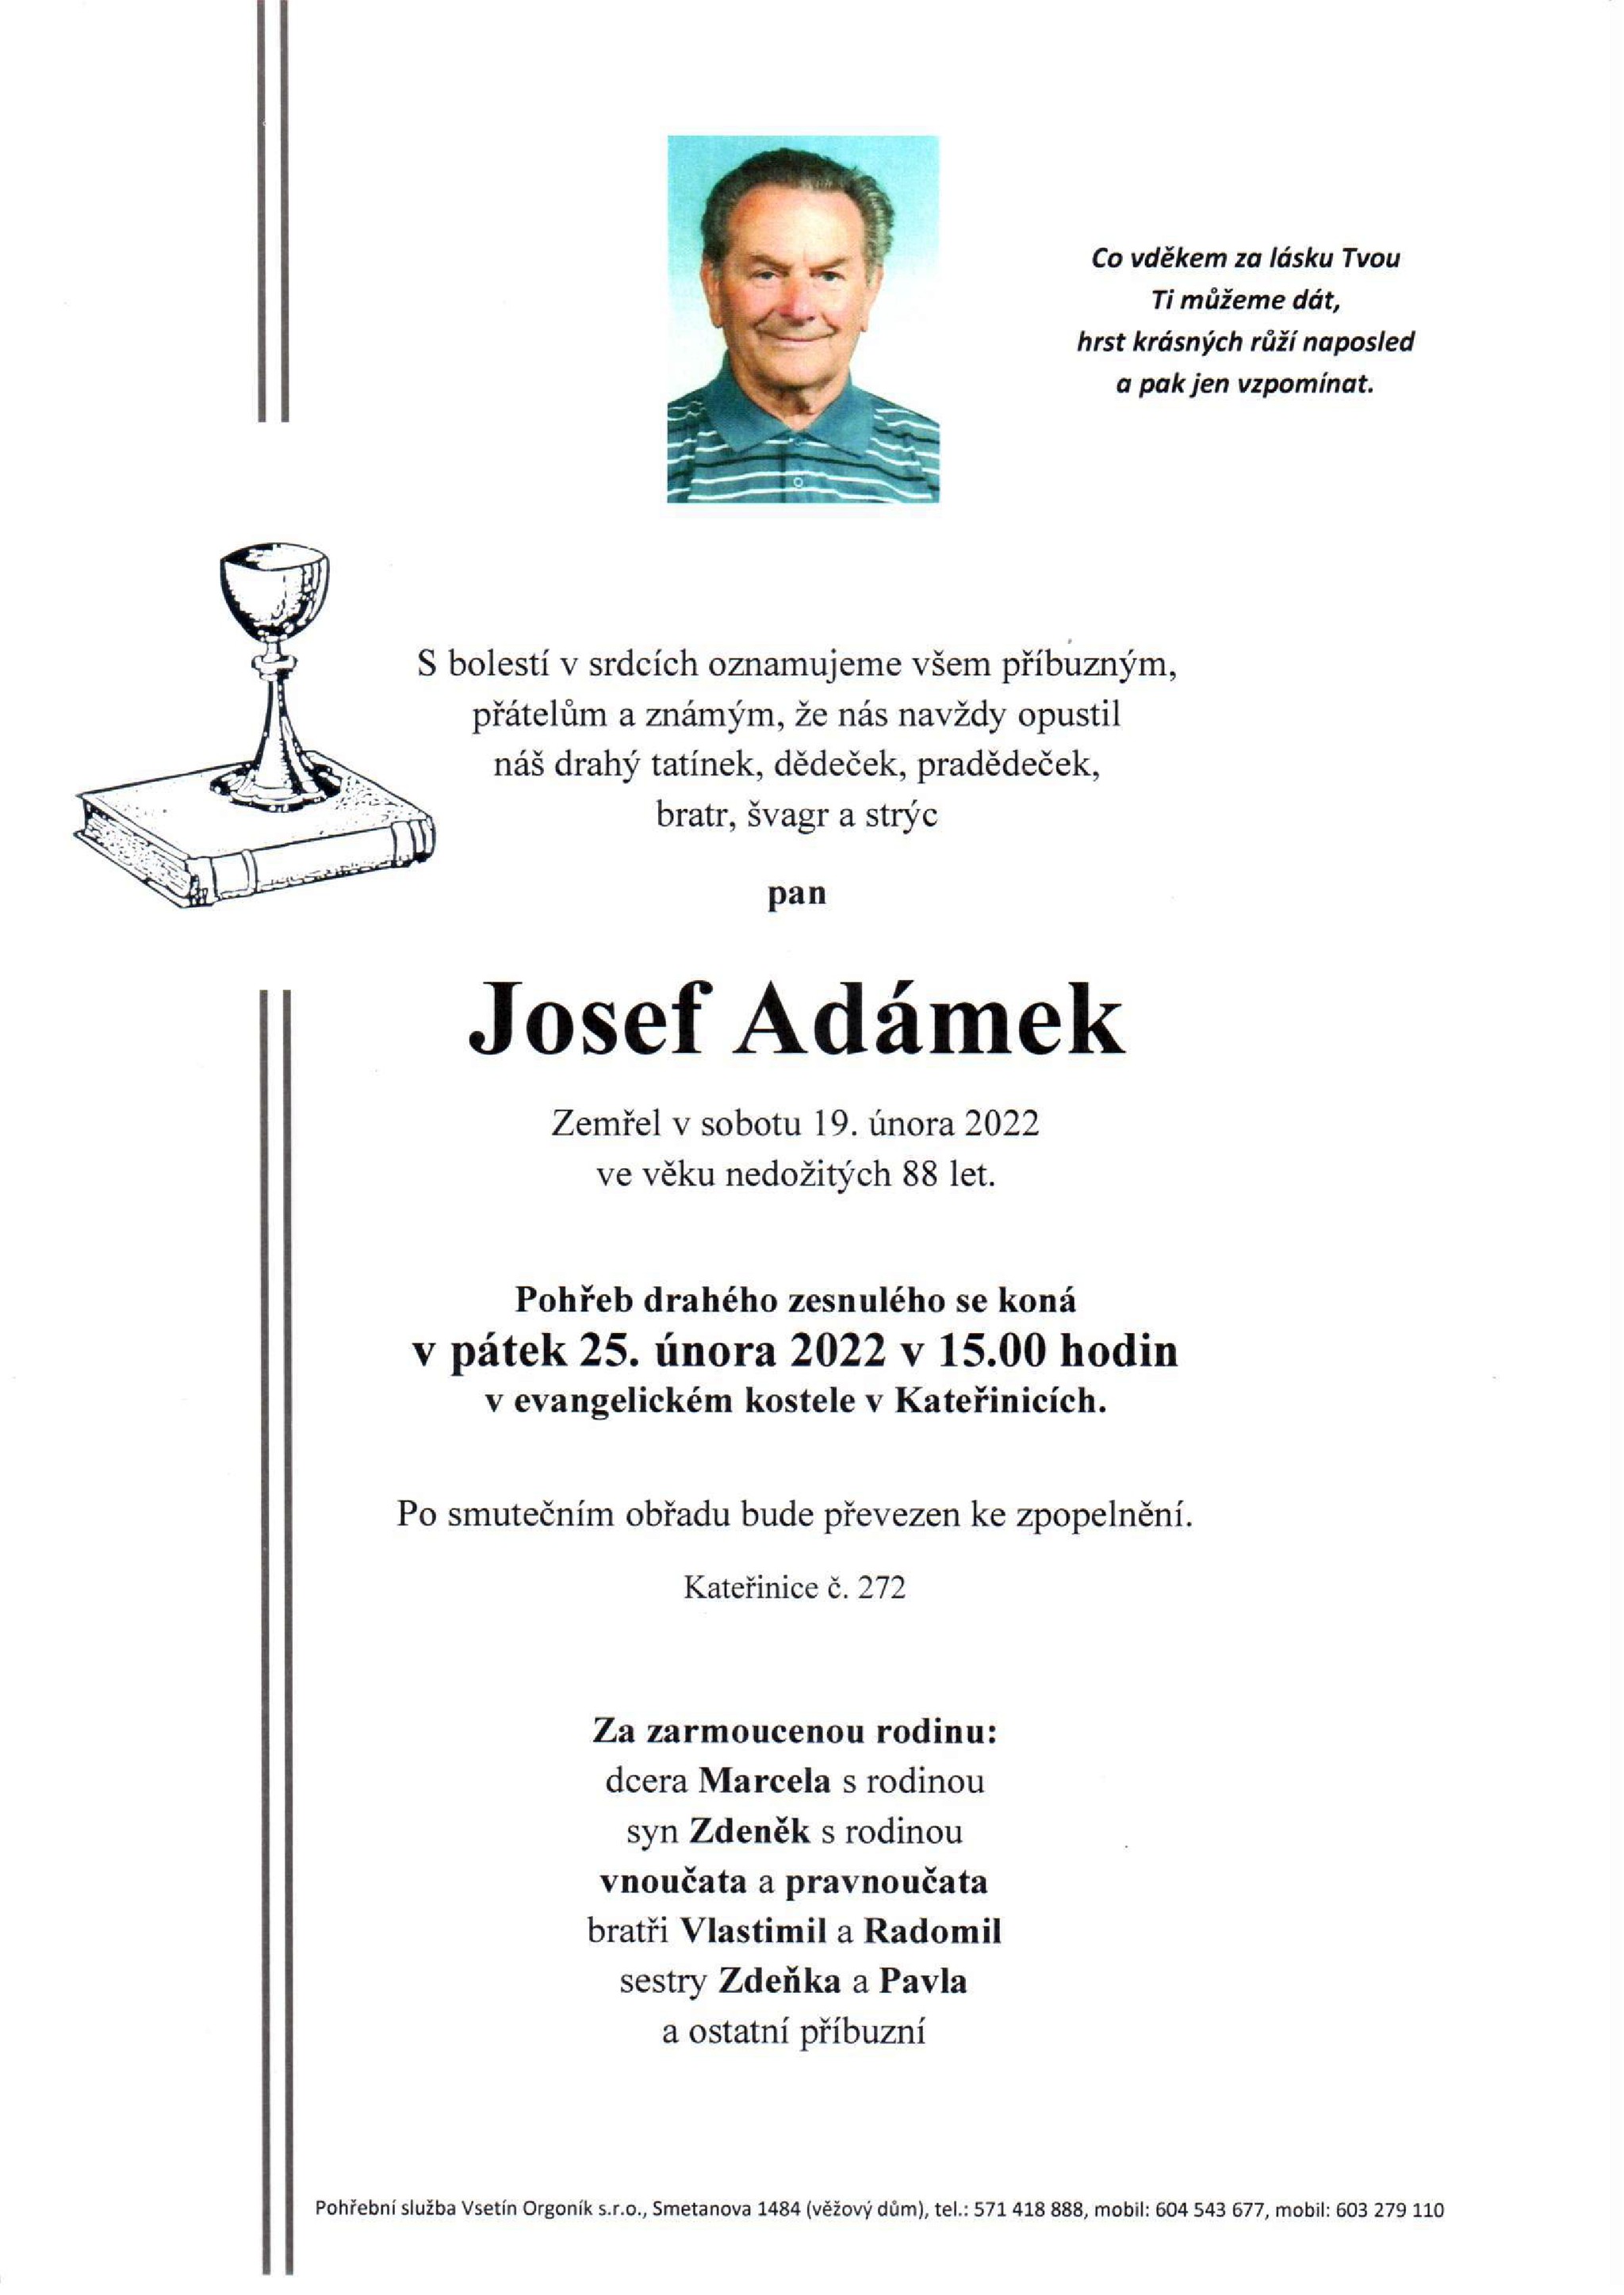 Josef Adámek